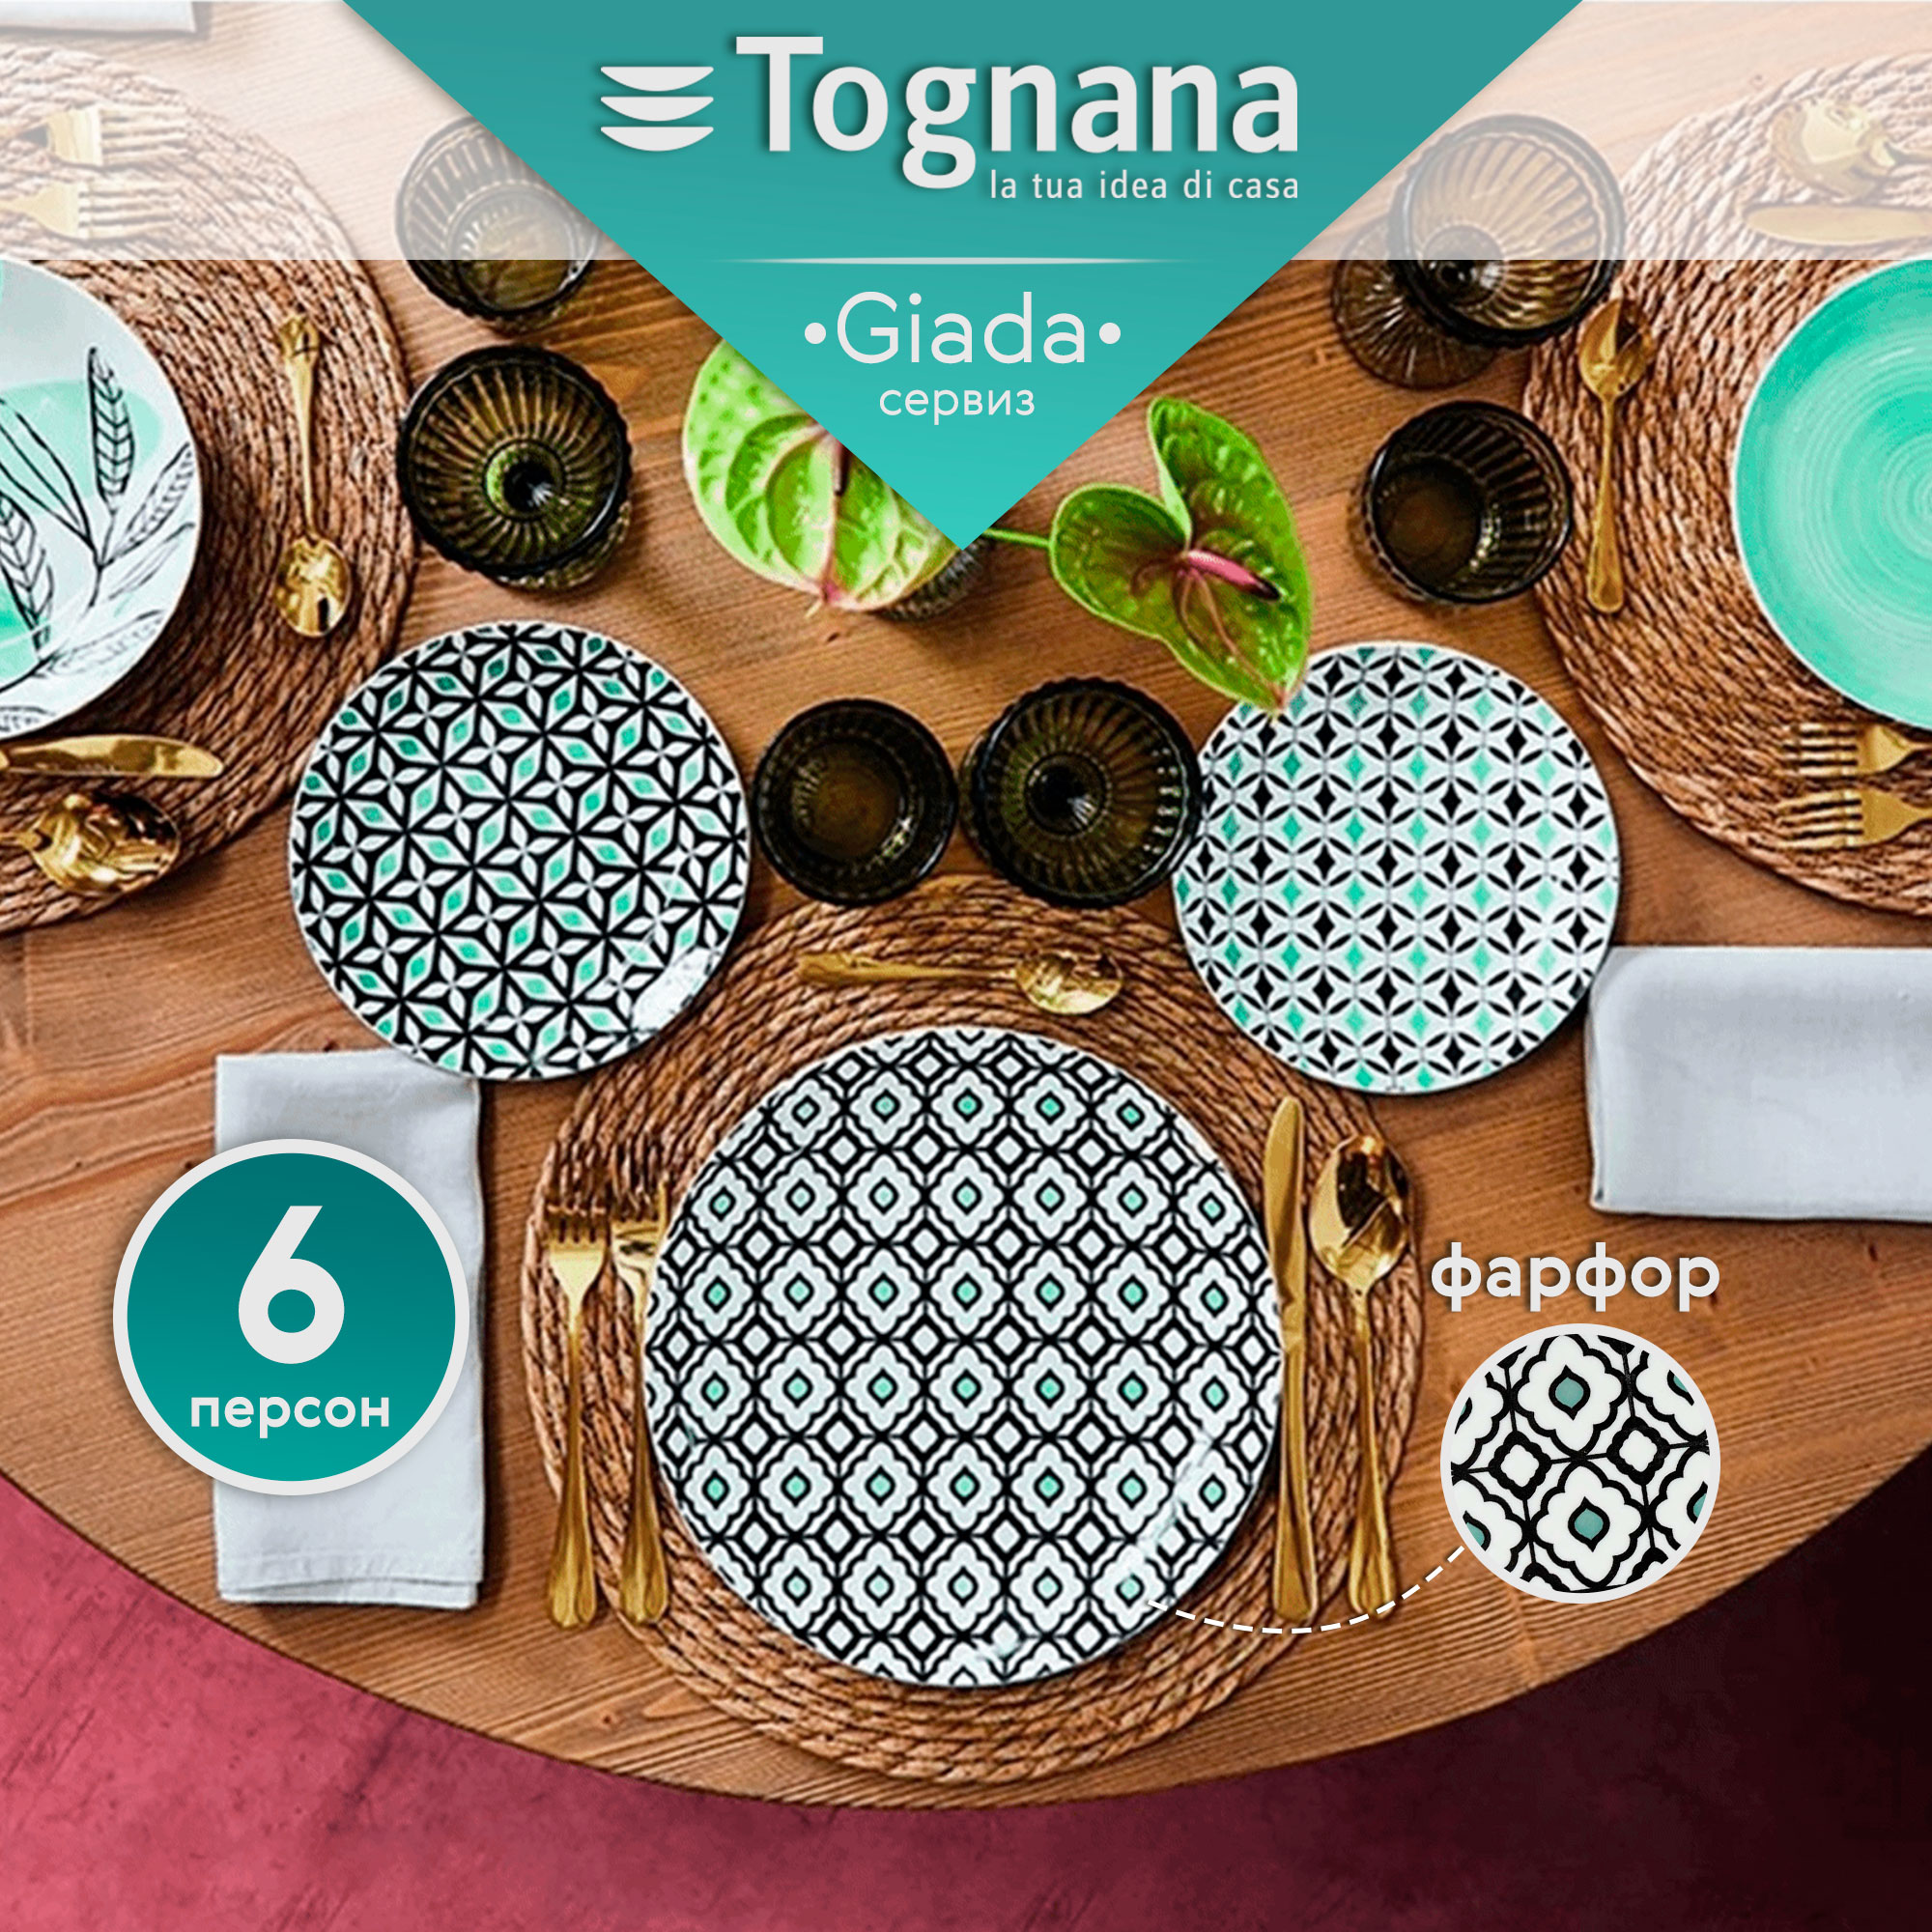 Сервиз столовый Tognana Giada 6 персон 18 предметов, цвет зеленый - фото 3